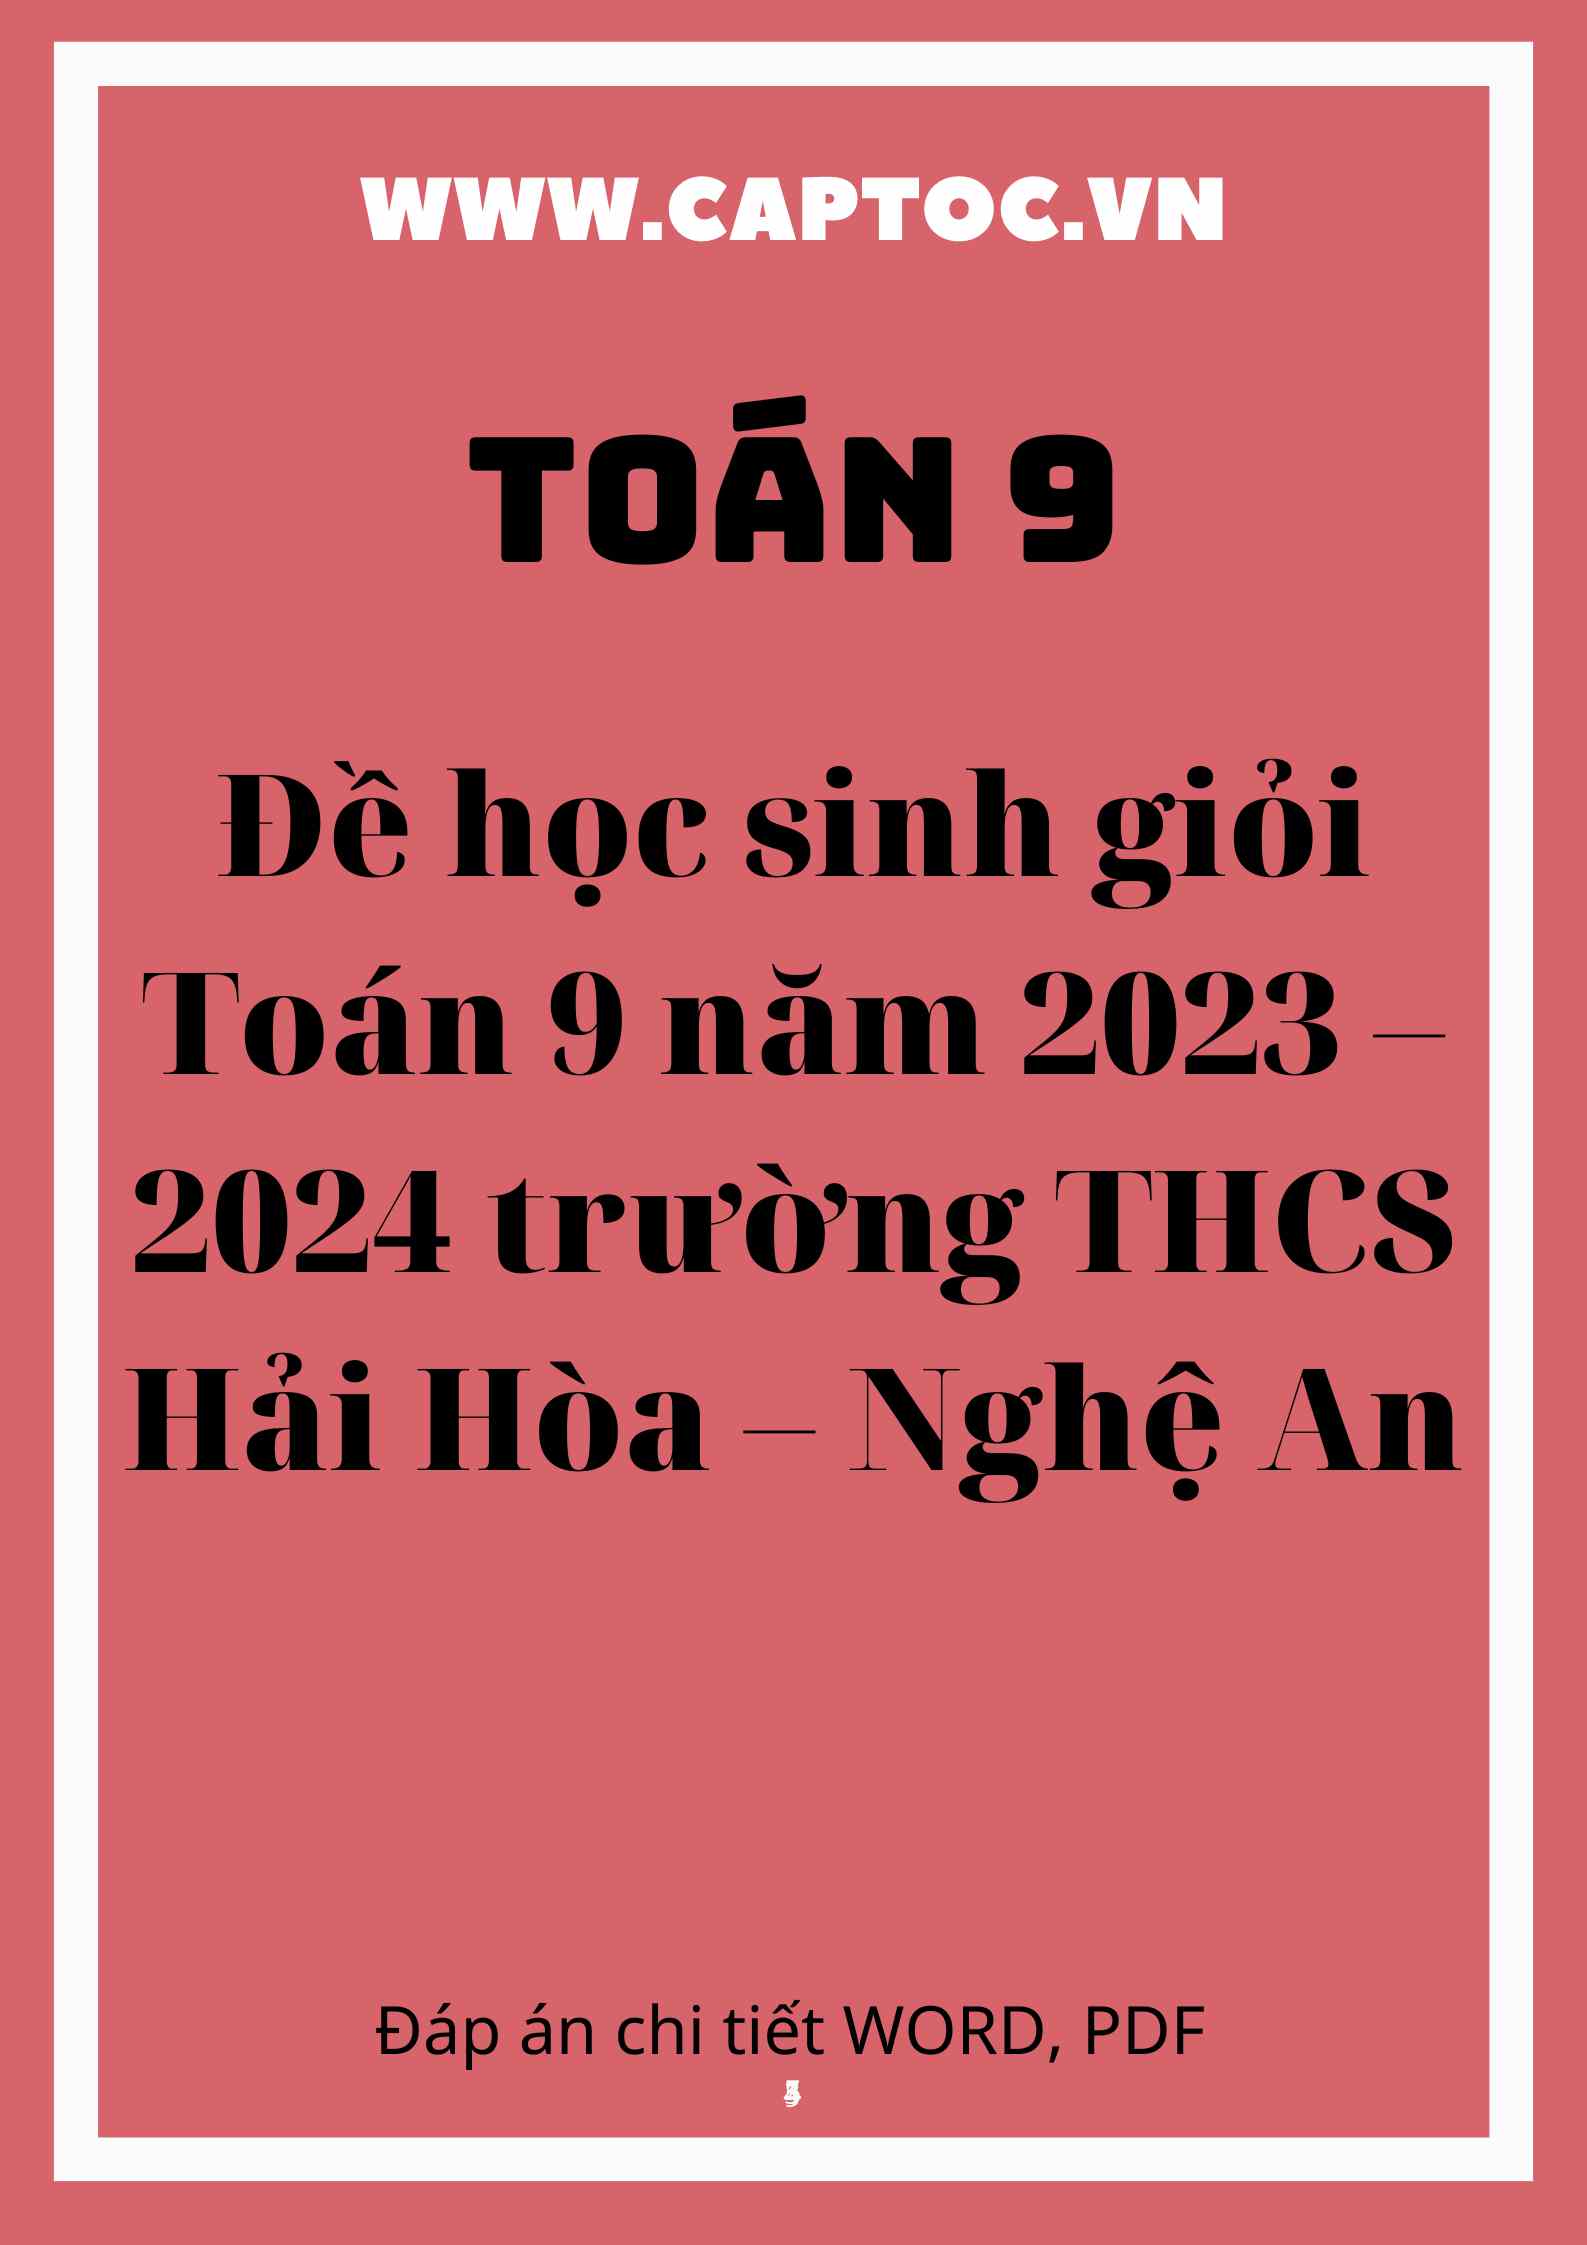 Đề học sinh giỏi Toán 9 năm 2023 – 2024 trường THCS Hải Hòa – Nghệ An